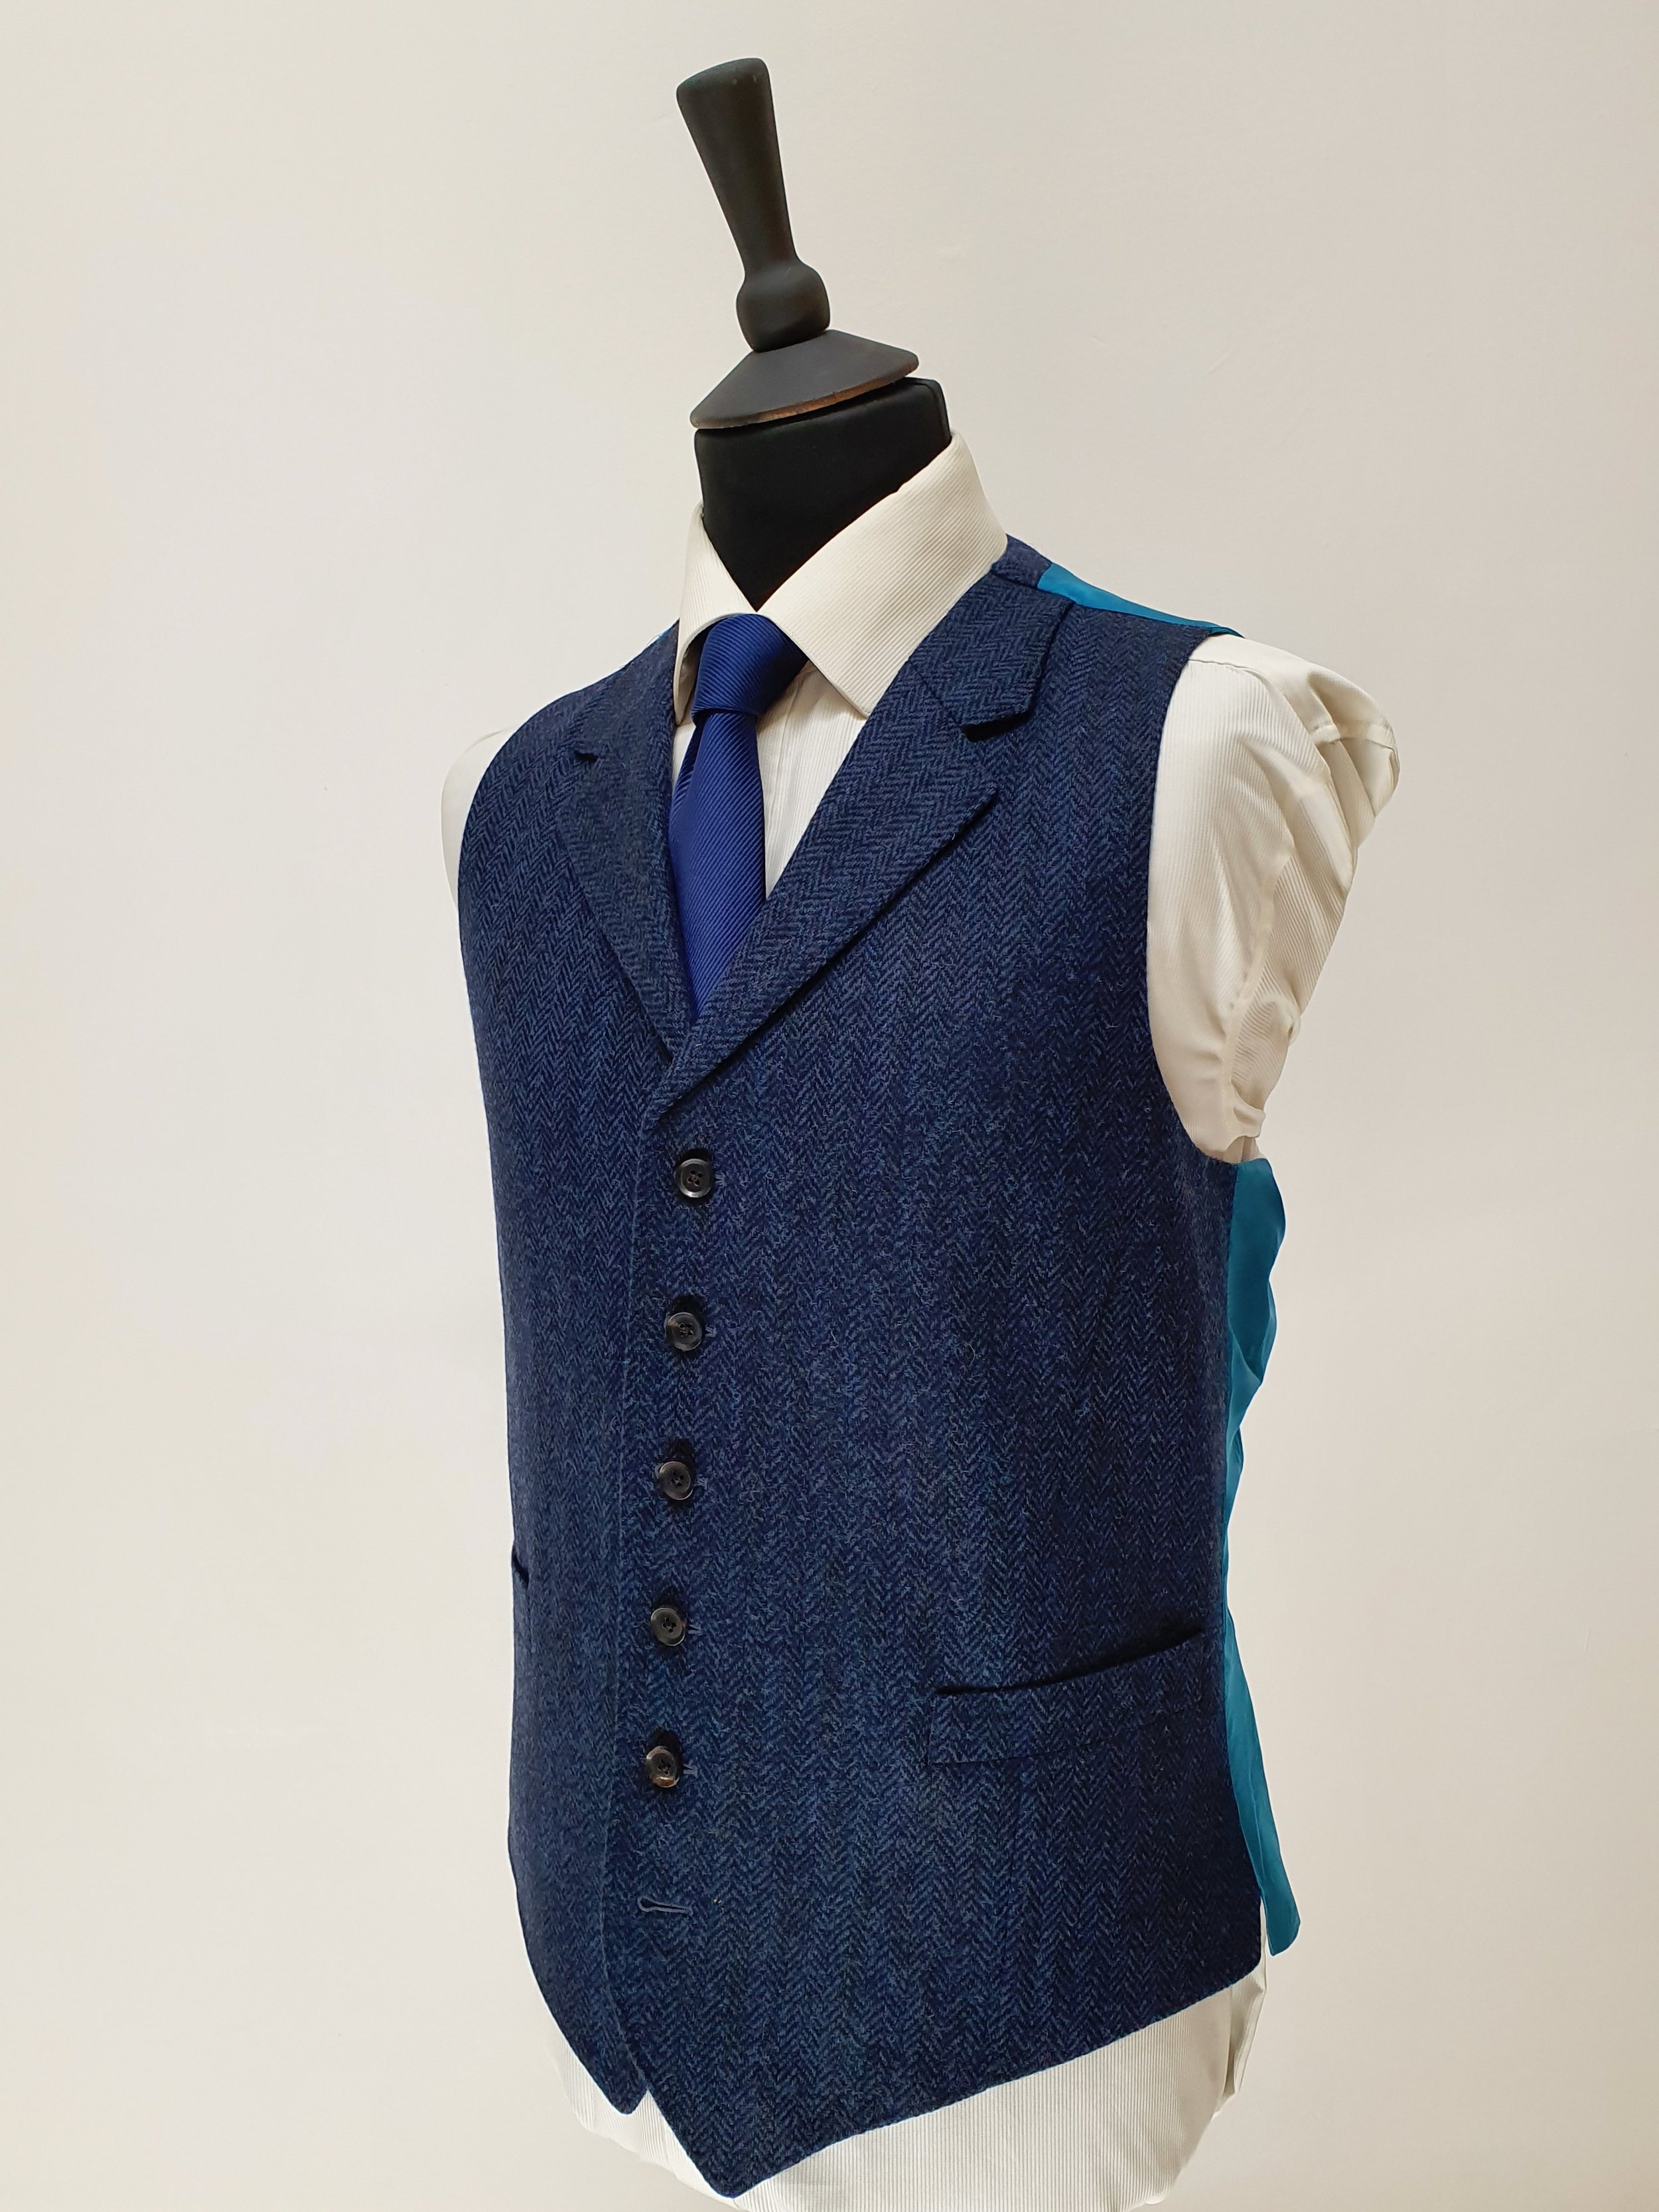 3 Piece Suit in Holland and Sherry Blue Herringbone Tweed (3).jpg